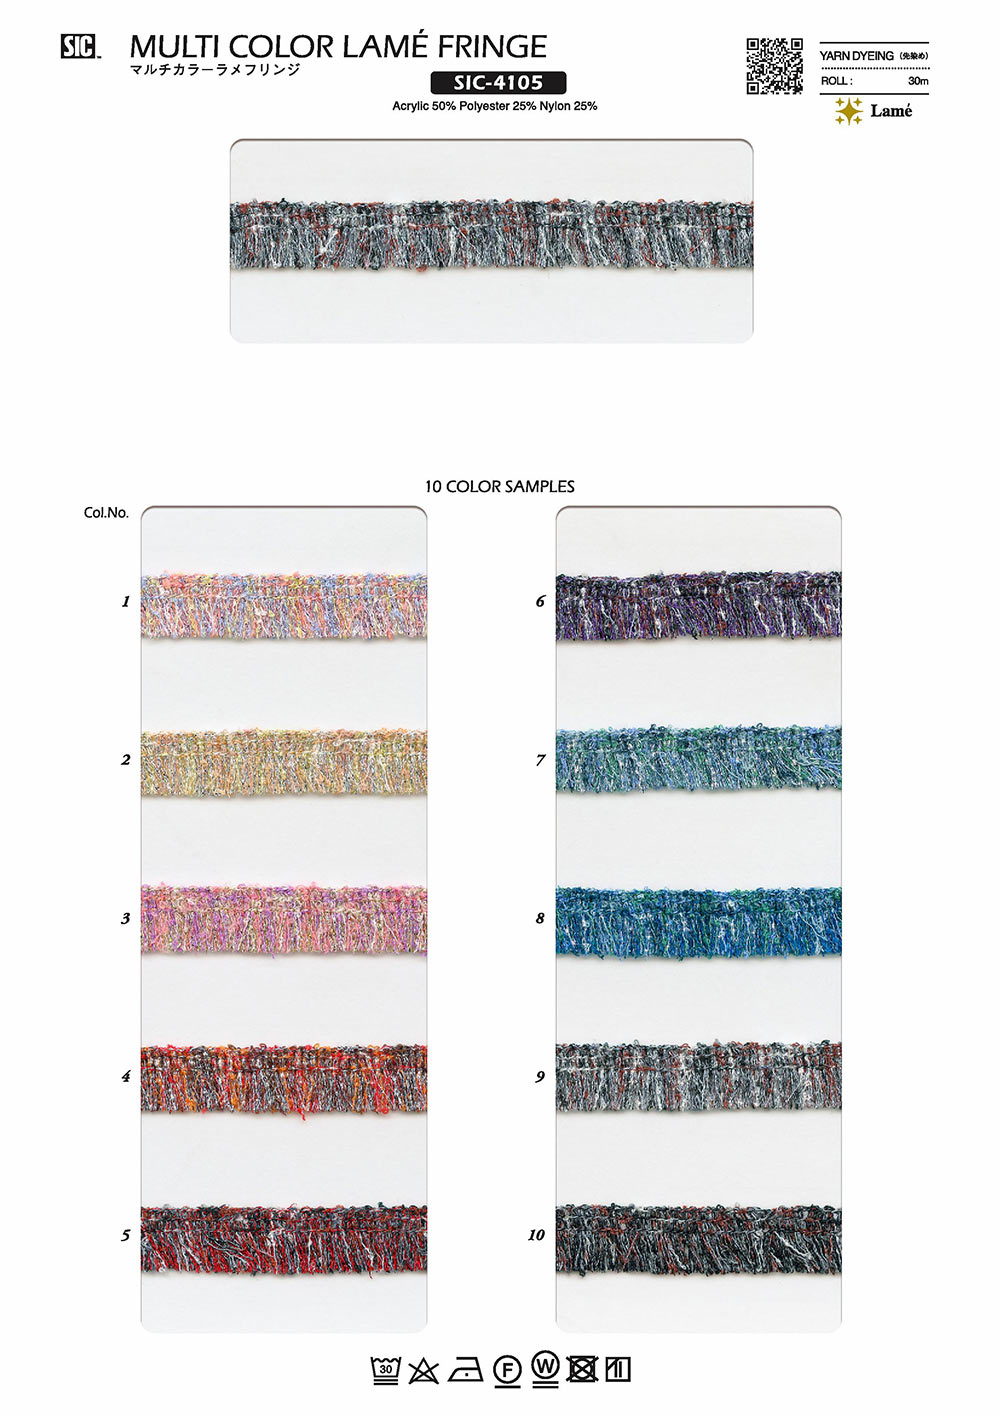 SIC-4105 Multicolor Lame Fringe[Lace] SHINDO(SIC)